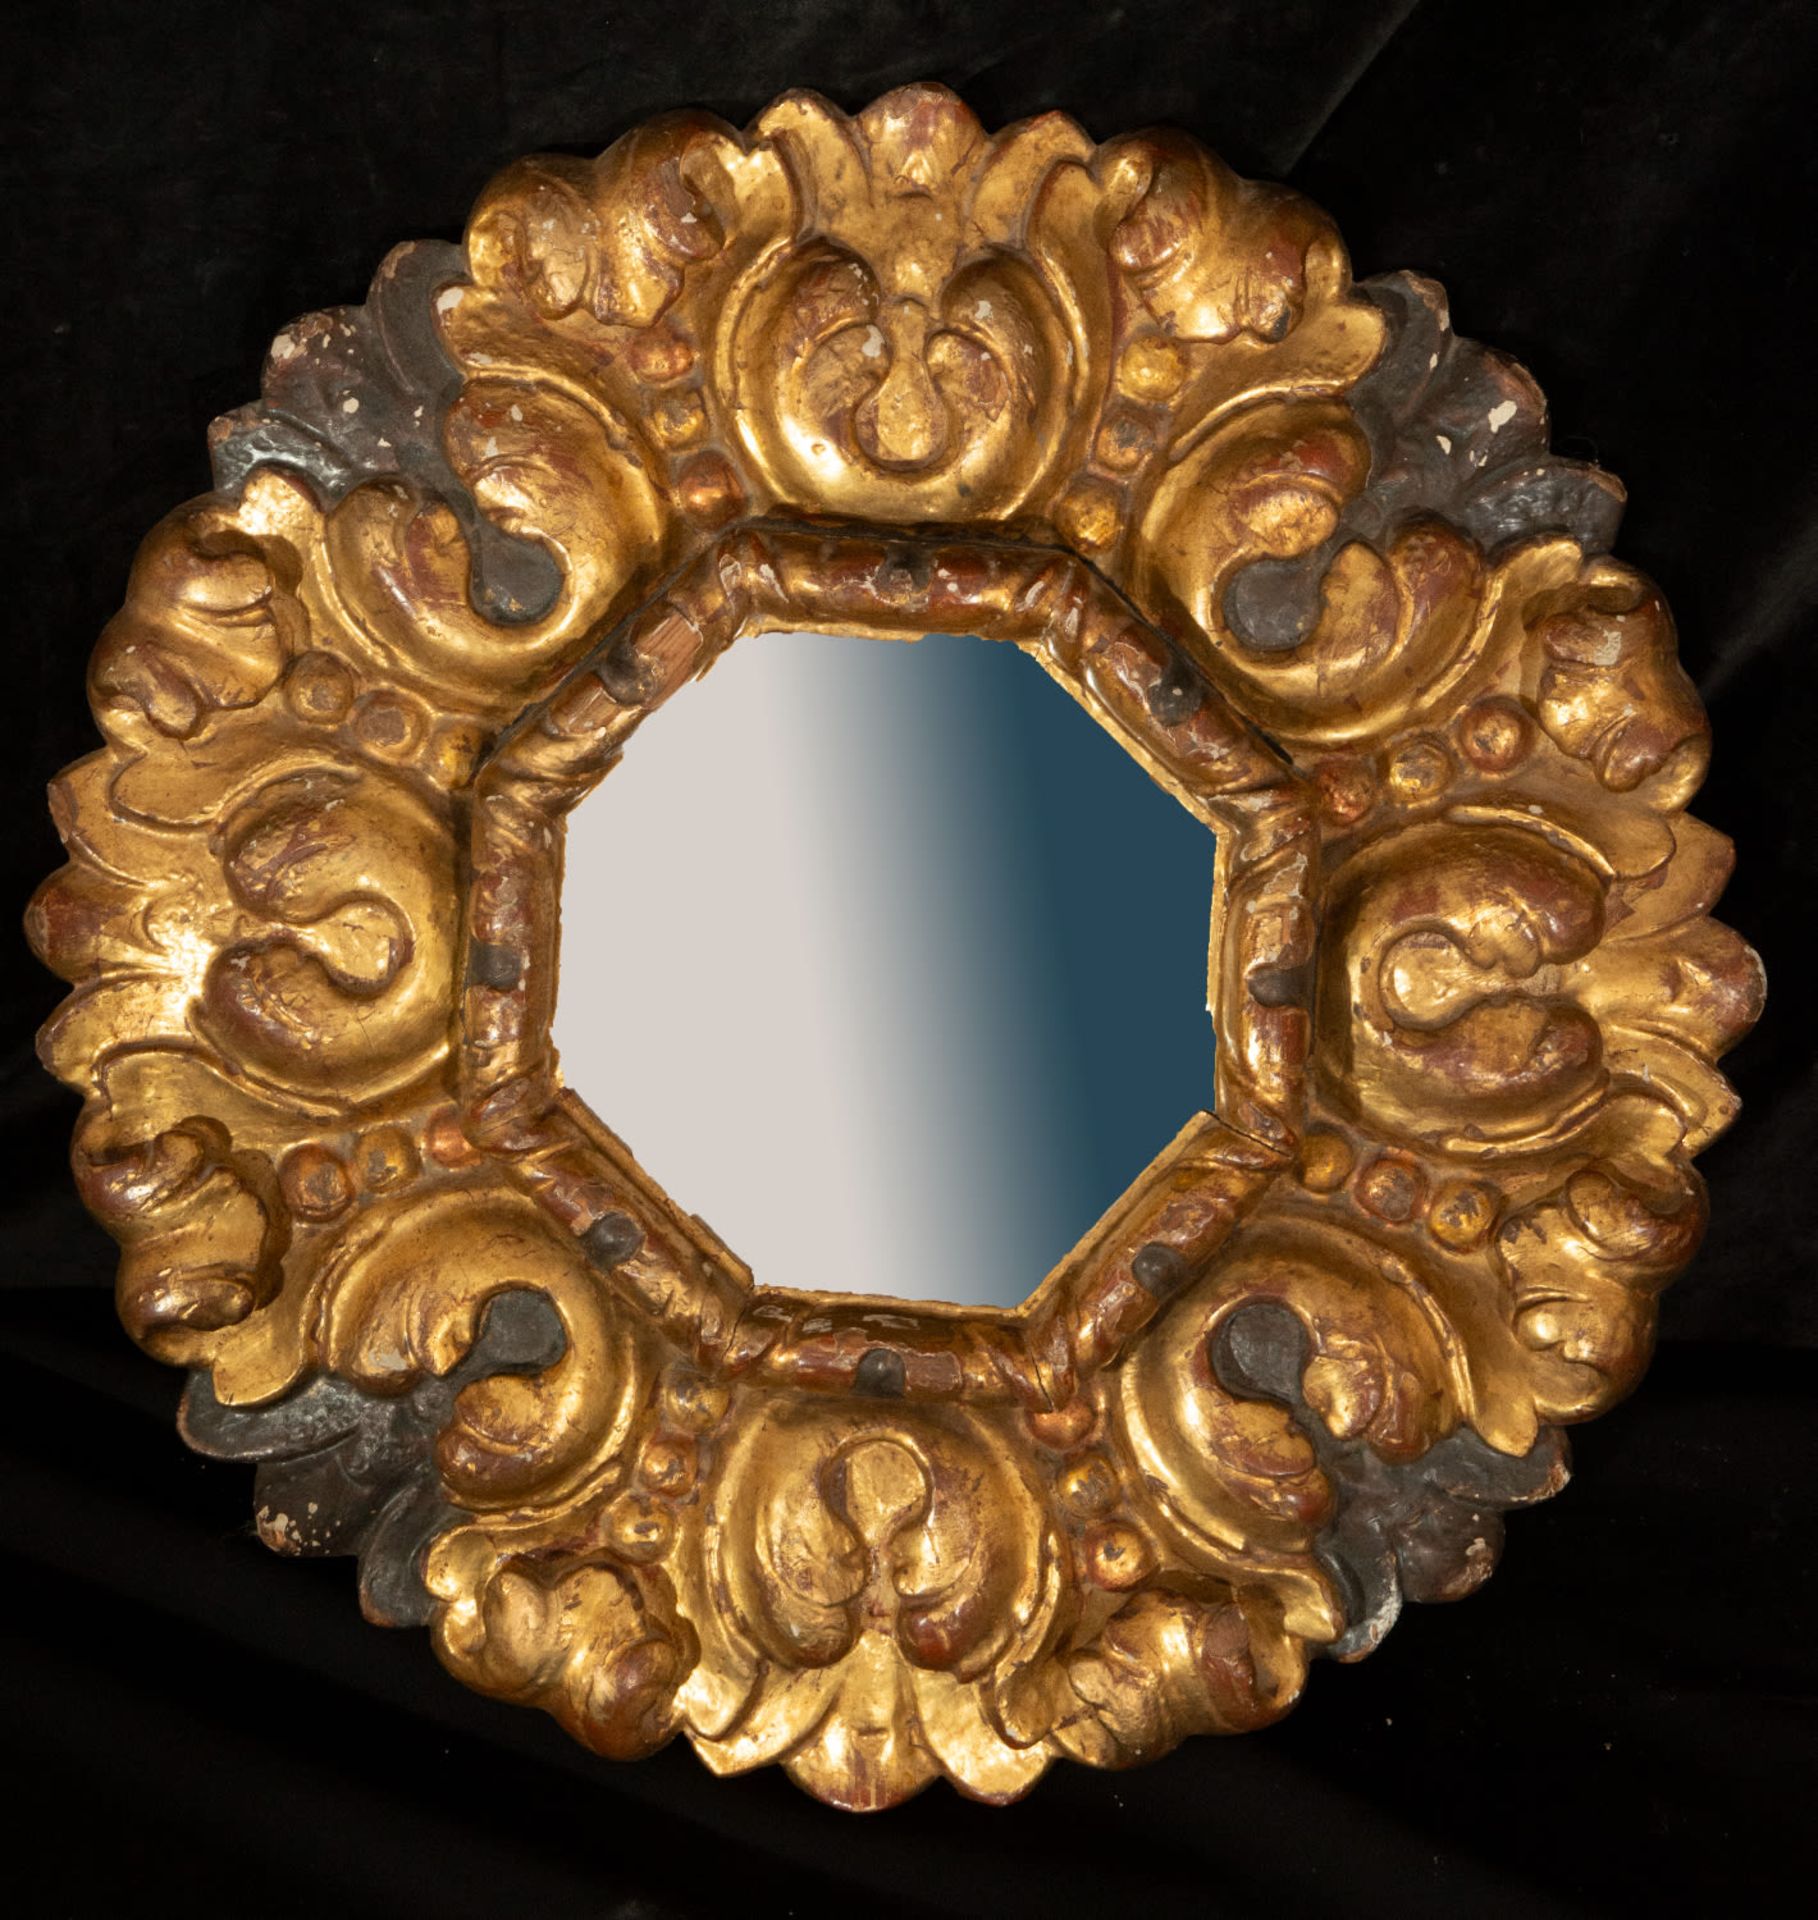 Octagonal Cornucopia Mirror Frame, Mexico, 17th century